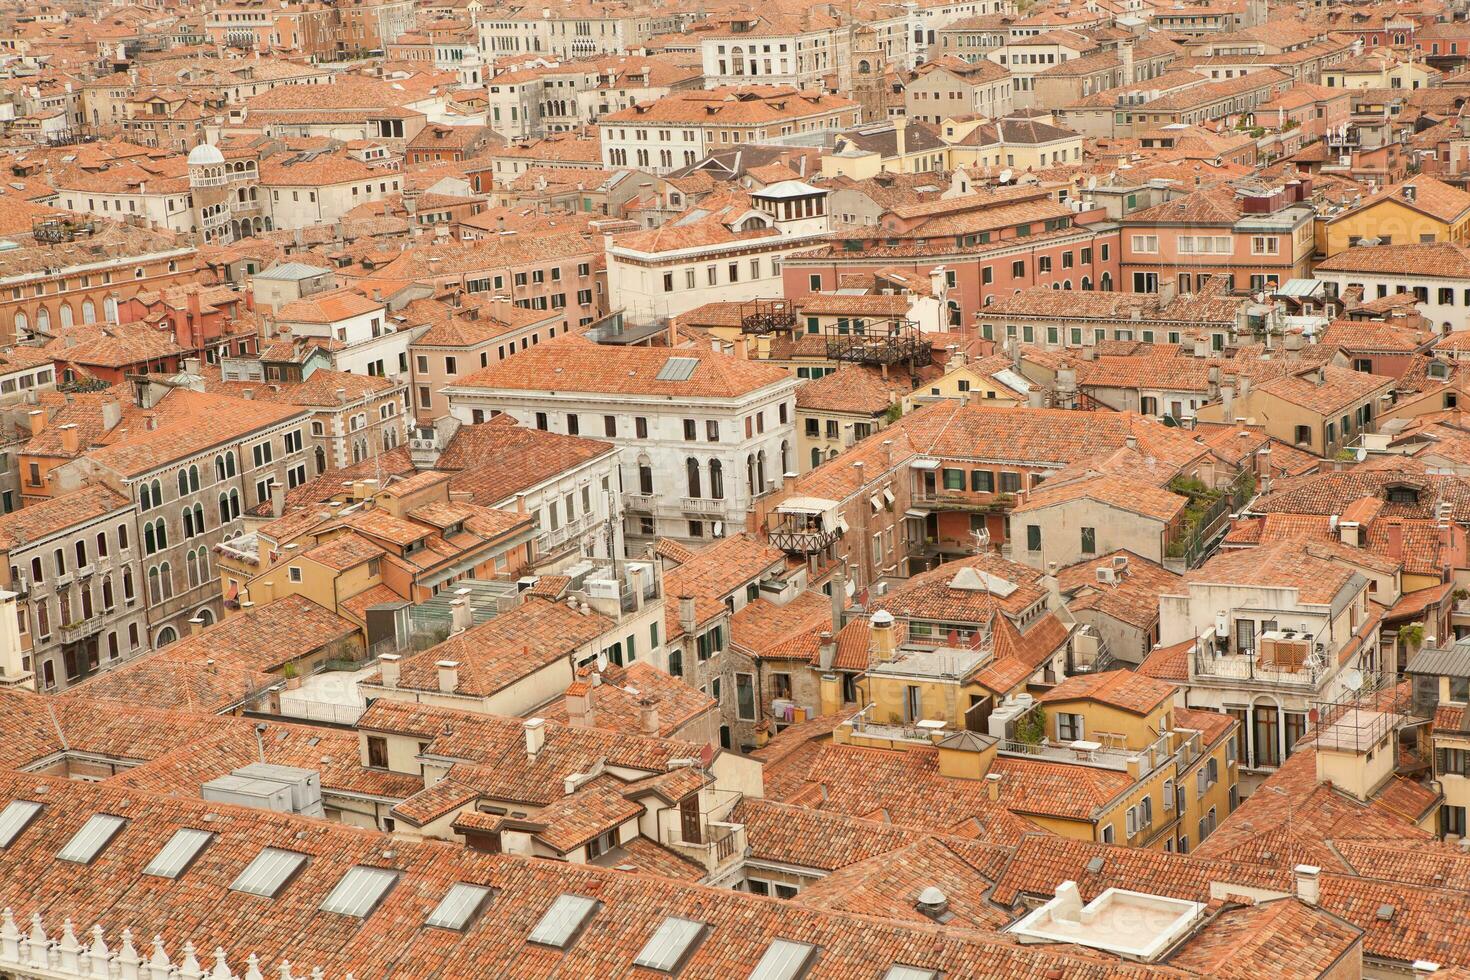 Venedig, en förhäxande stad i Italien, full av historia och medeltida arkitektur. foto